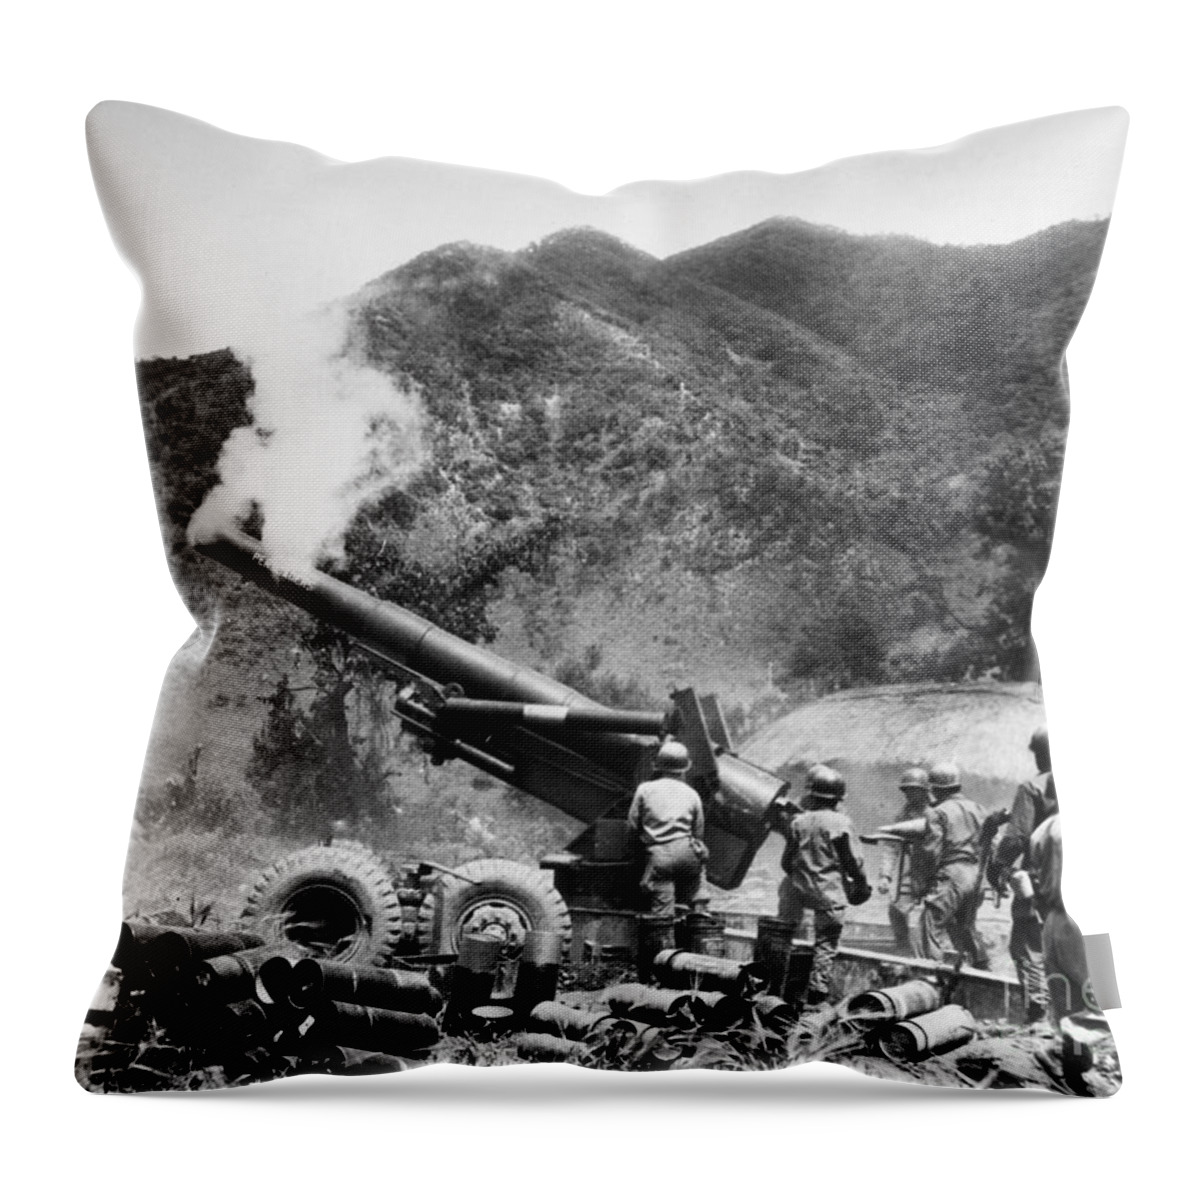 1951 Throw Pillow featuring the photograph Korean War: Artillery #3 by Granger